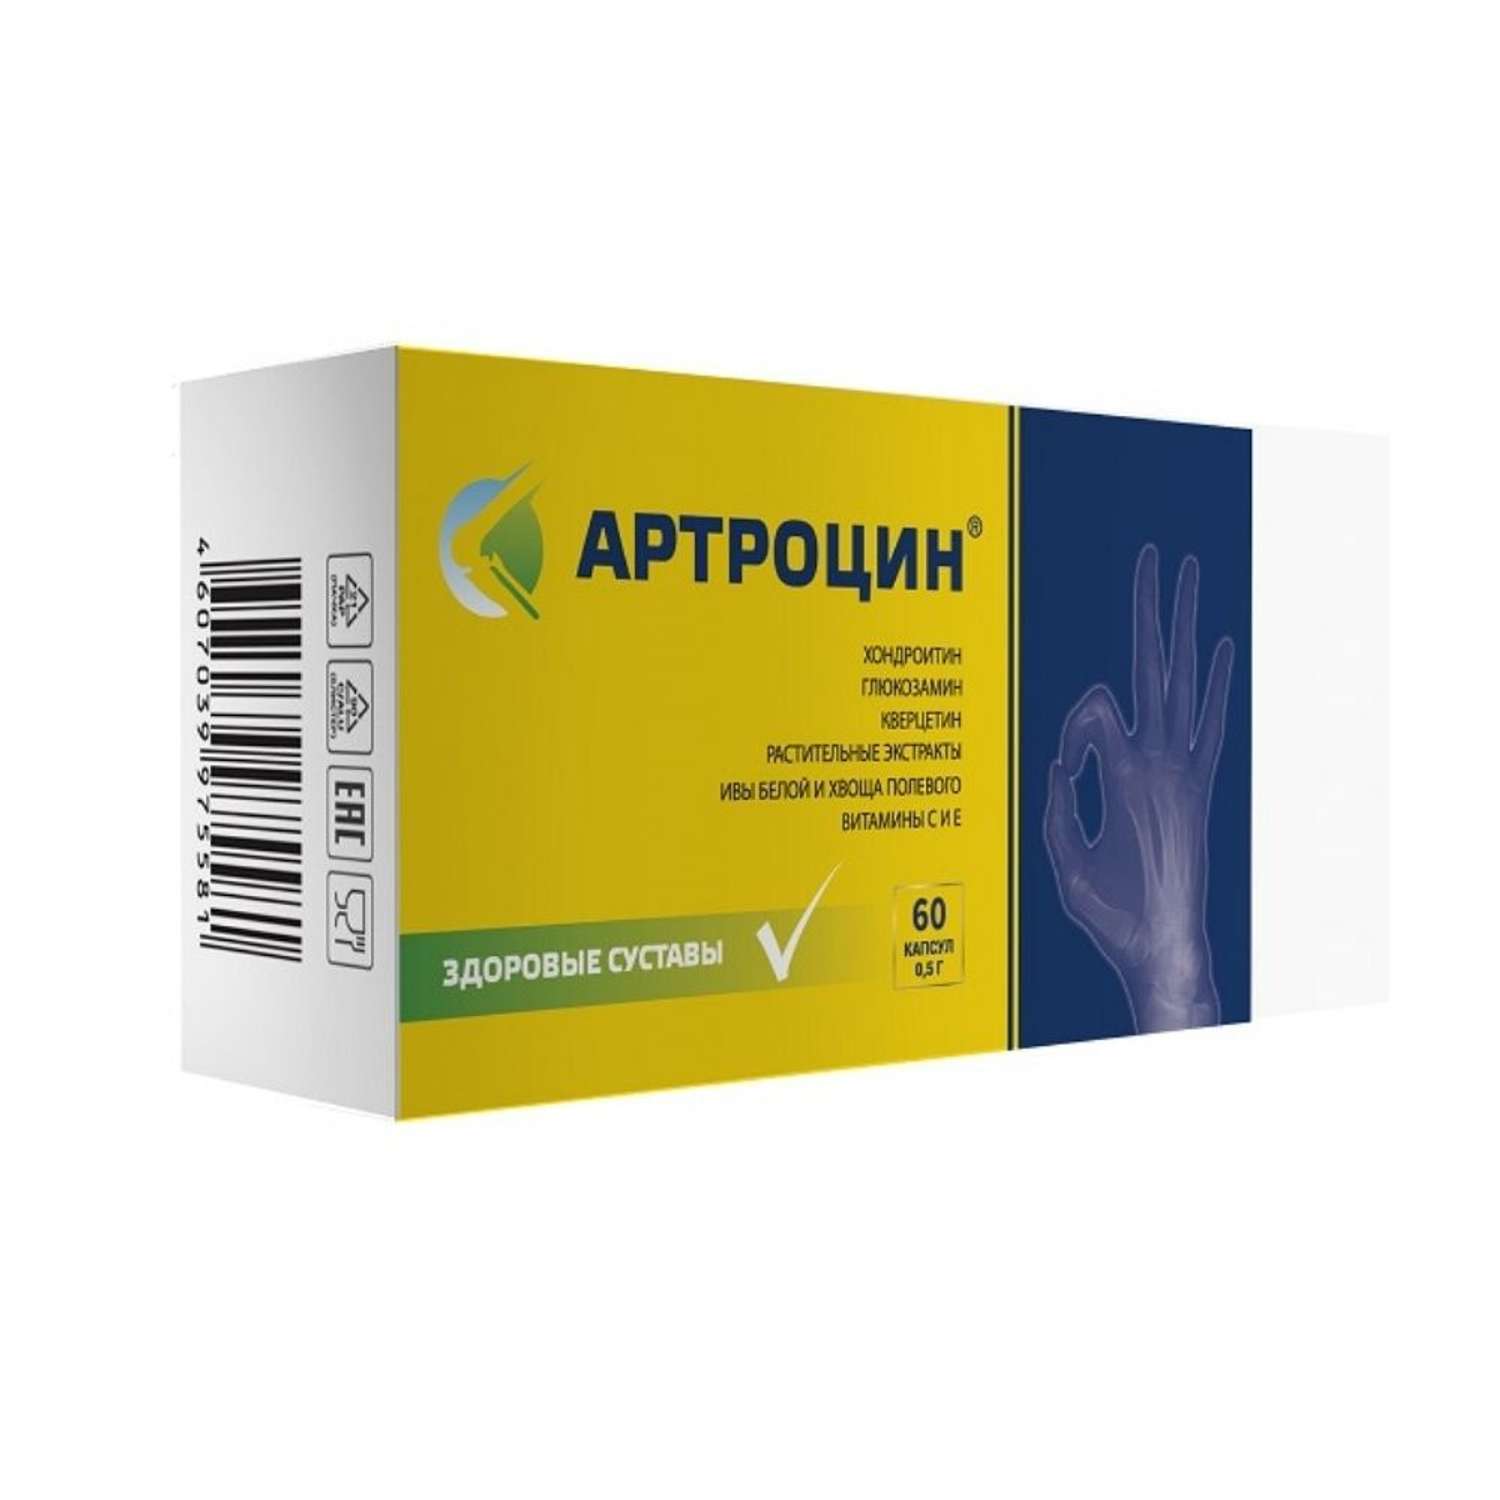 БАД Артроцин 0.5г 60 капсул - фото 2